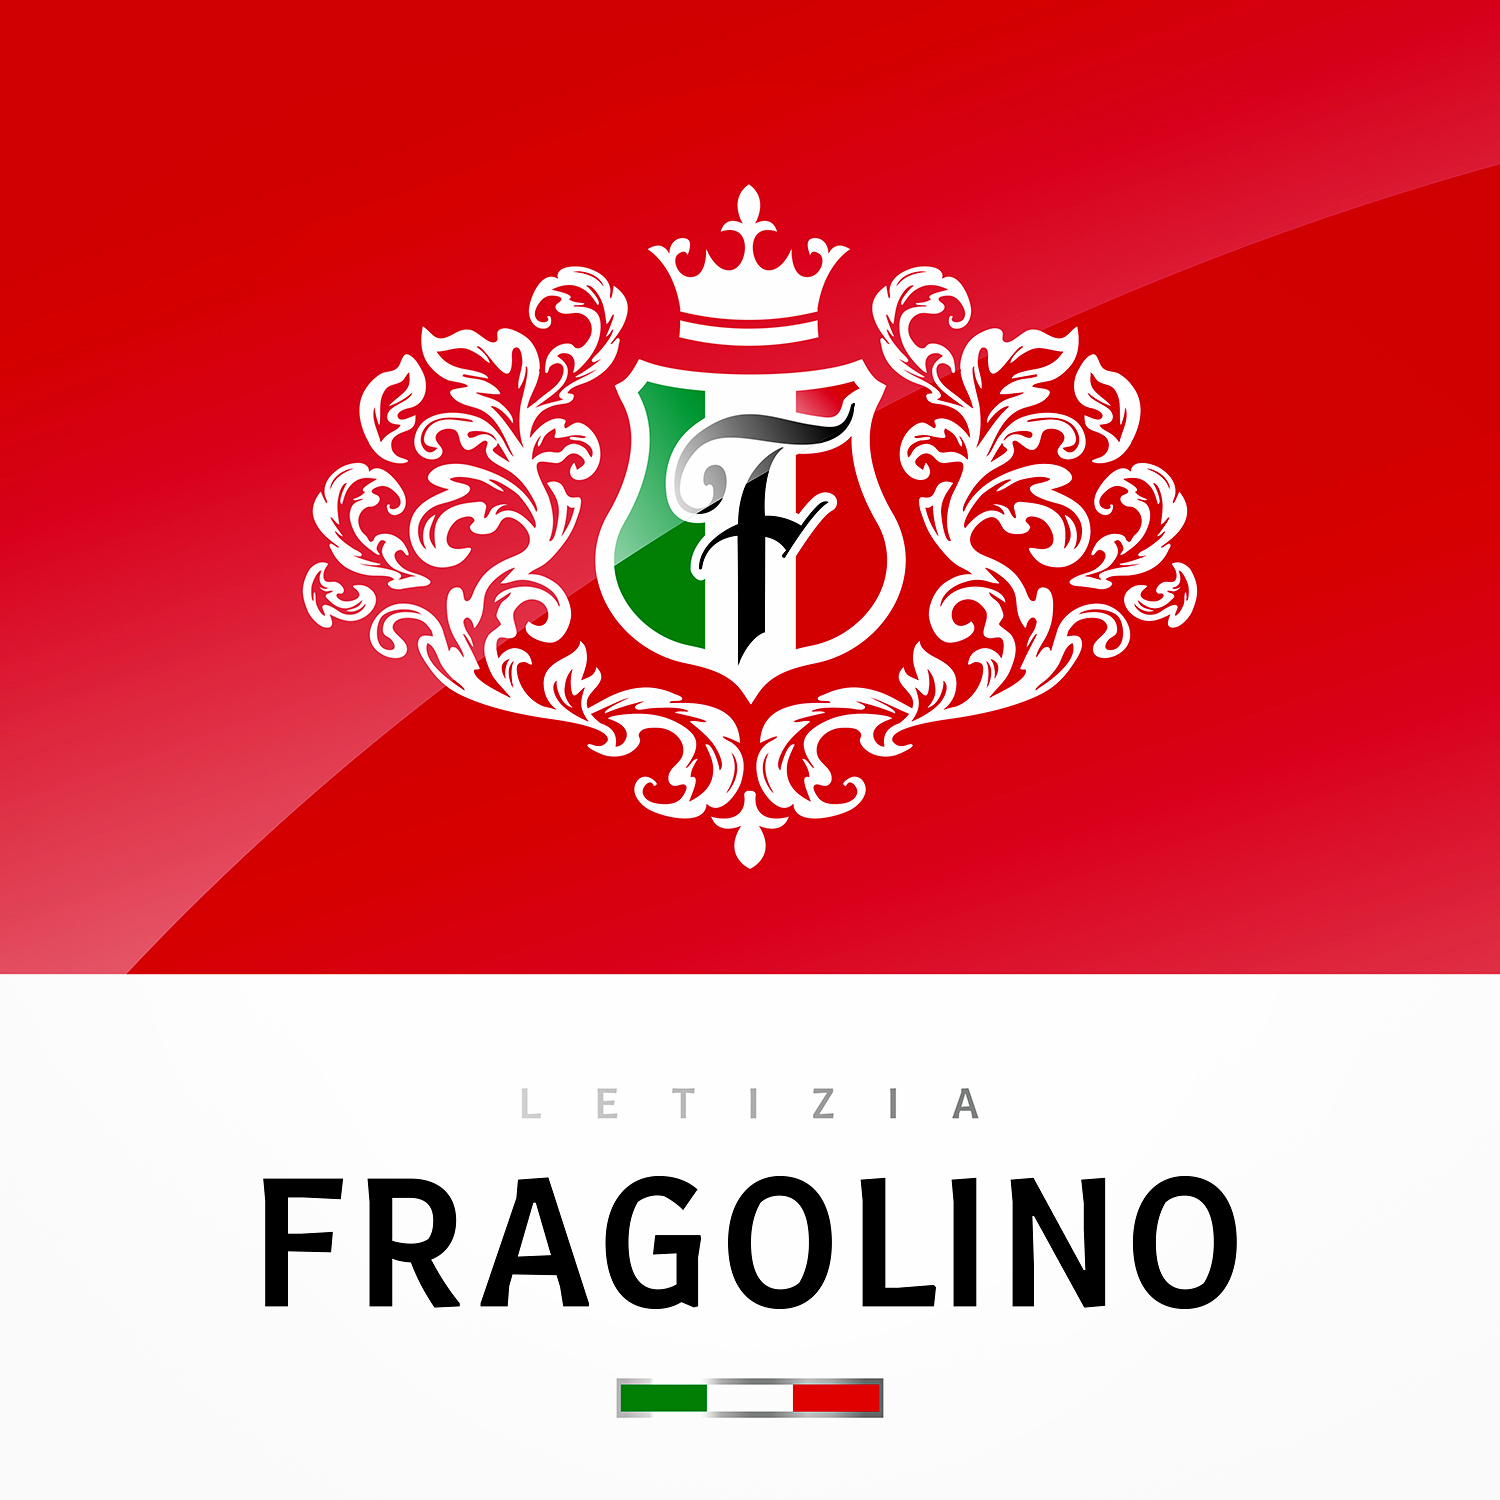 Fragolino罐装甜酒包装设计